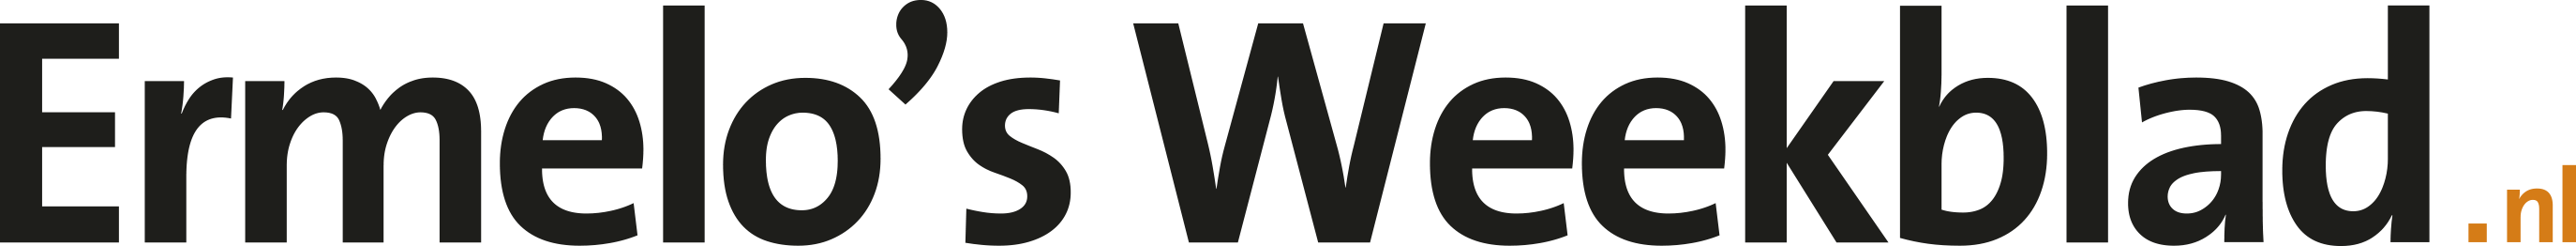 Logo ermelosweekblad.nl